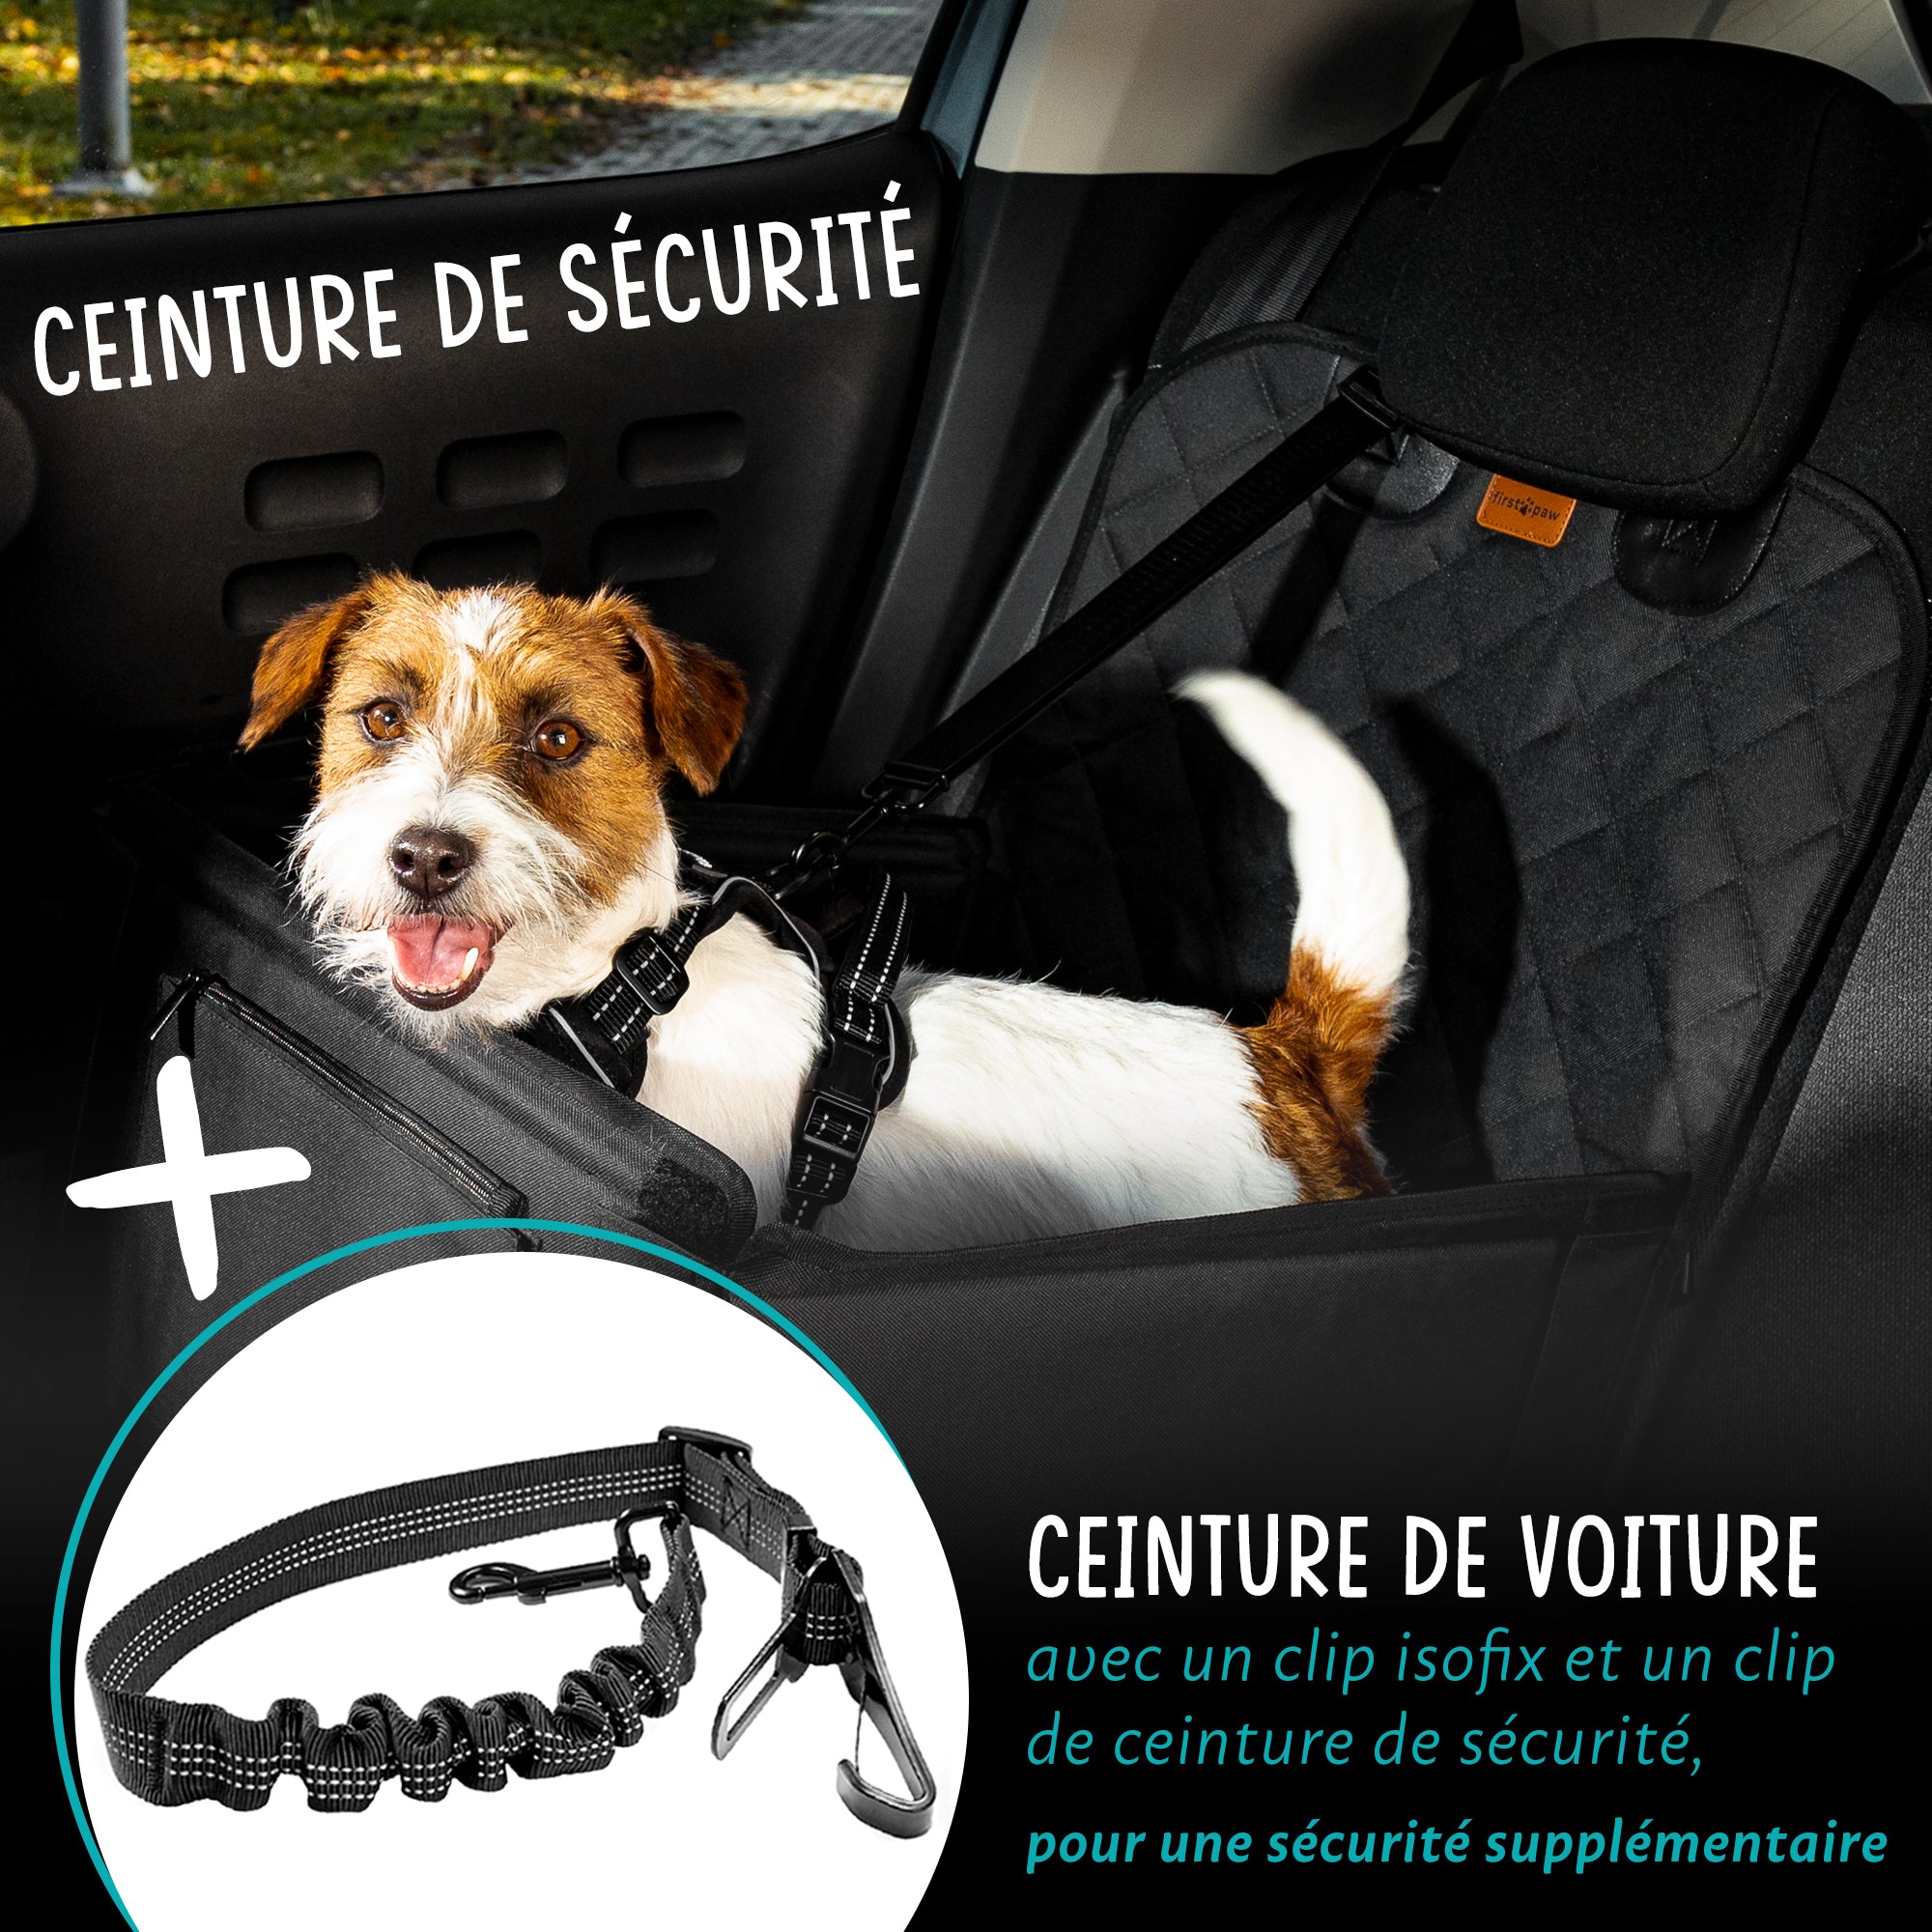 Ceinture pour voiture pour la sécurité de votre chien